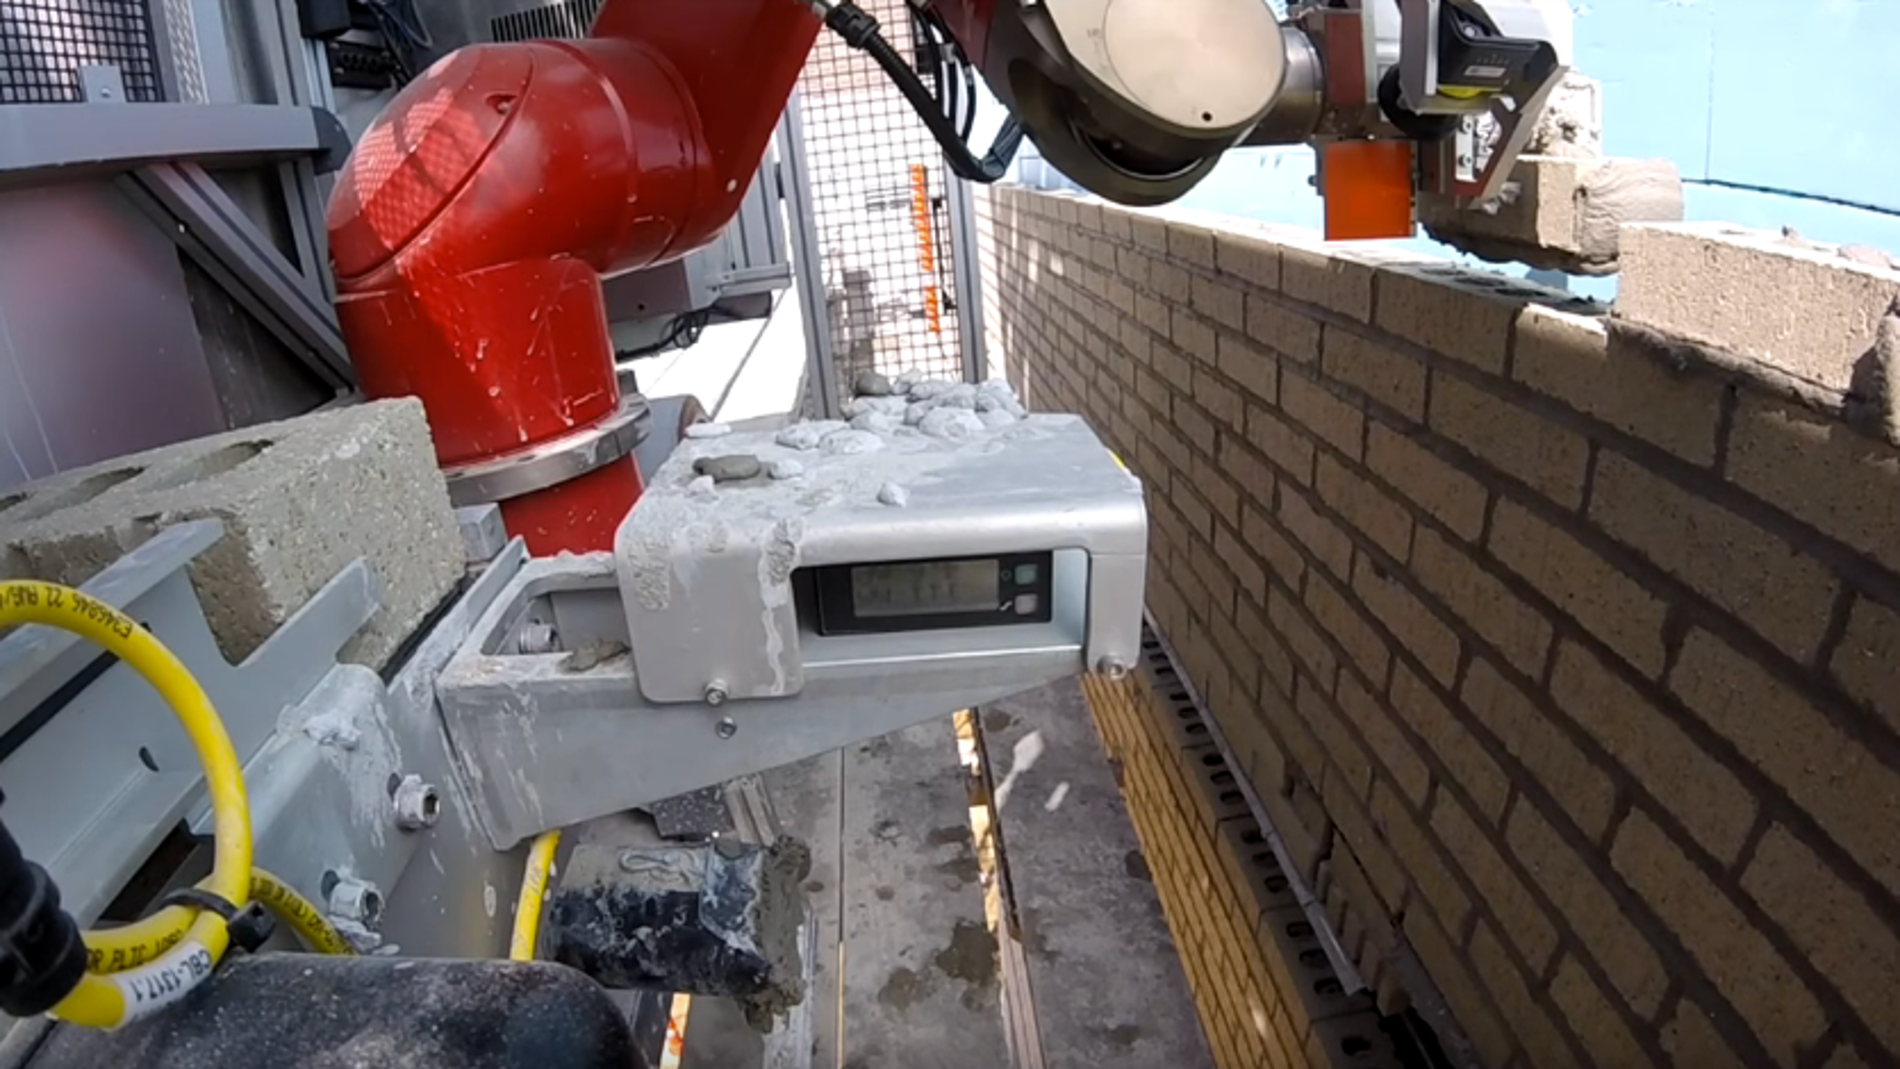 SAM, el robot albañil, crea un muro de 3.000 ladrillos en una hora